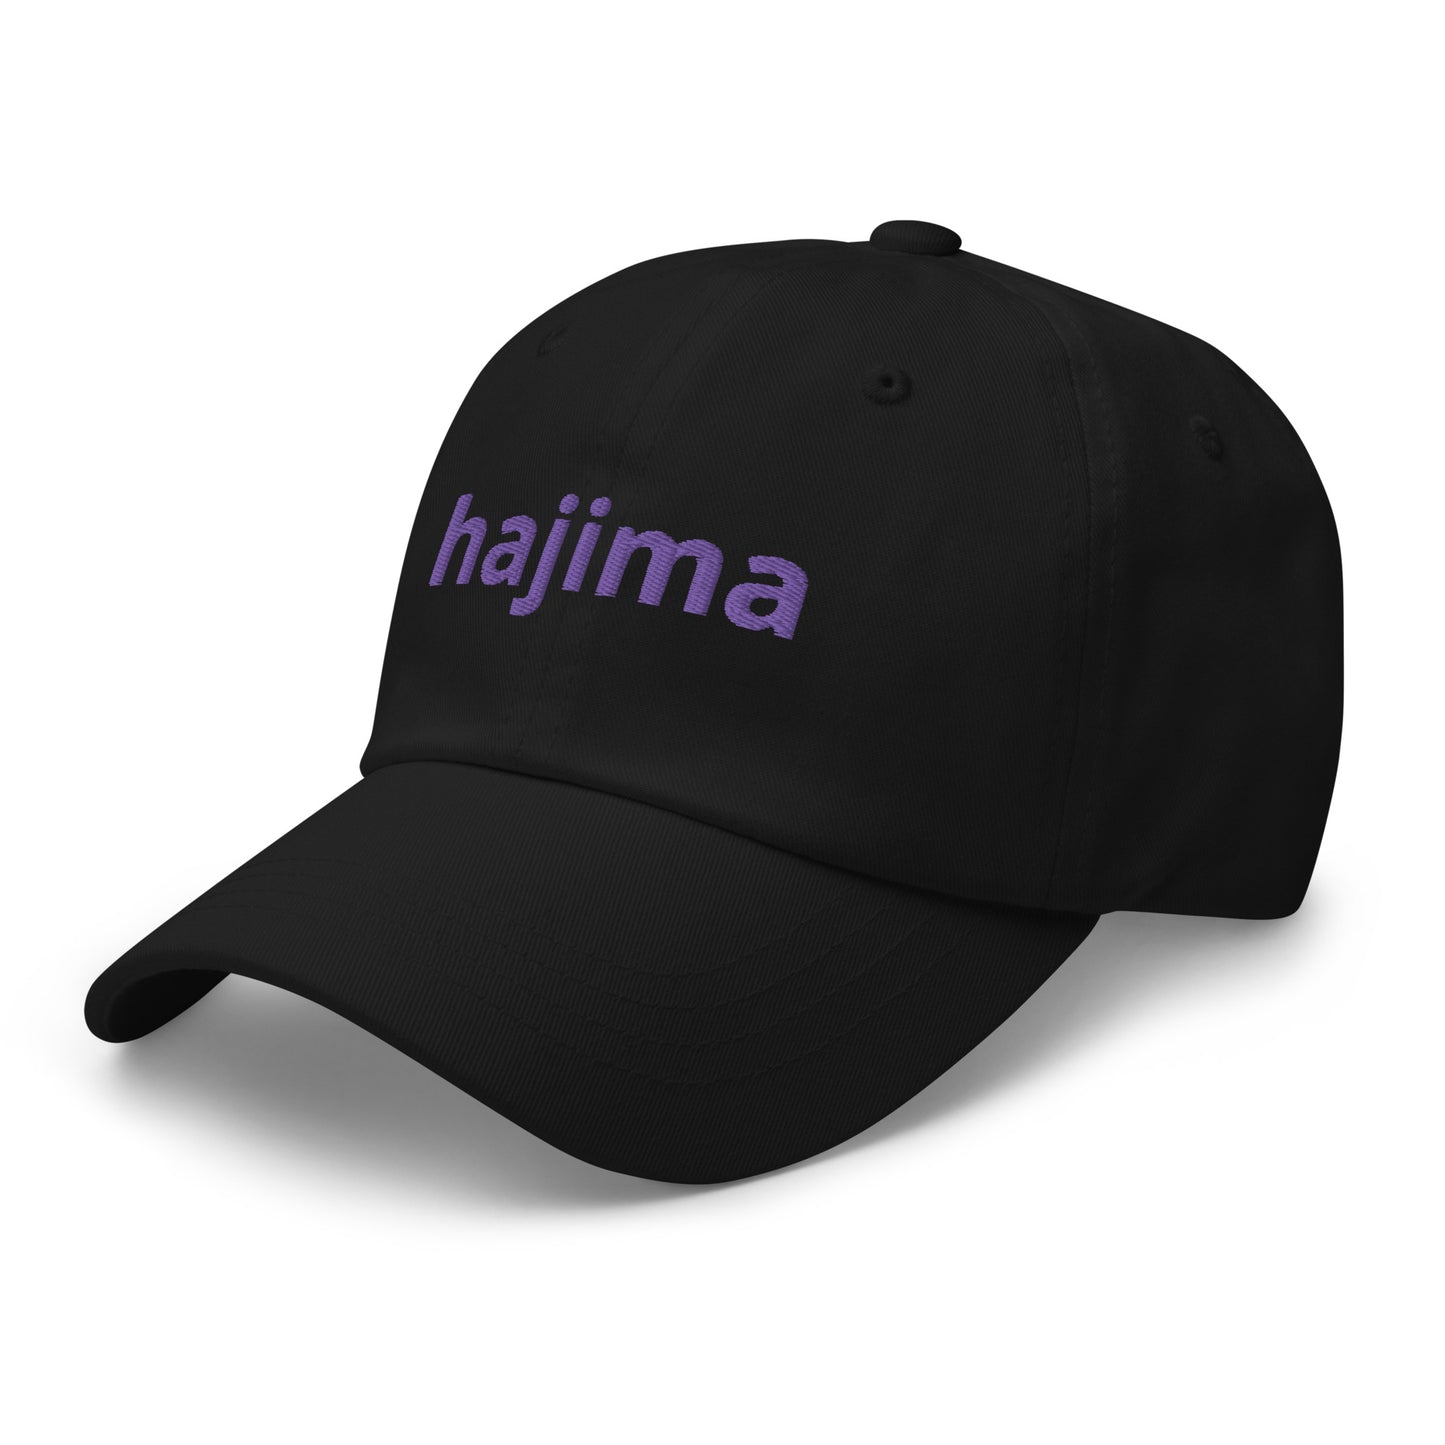 Suga Hat with Hajima in purple